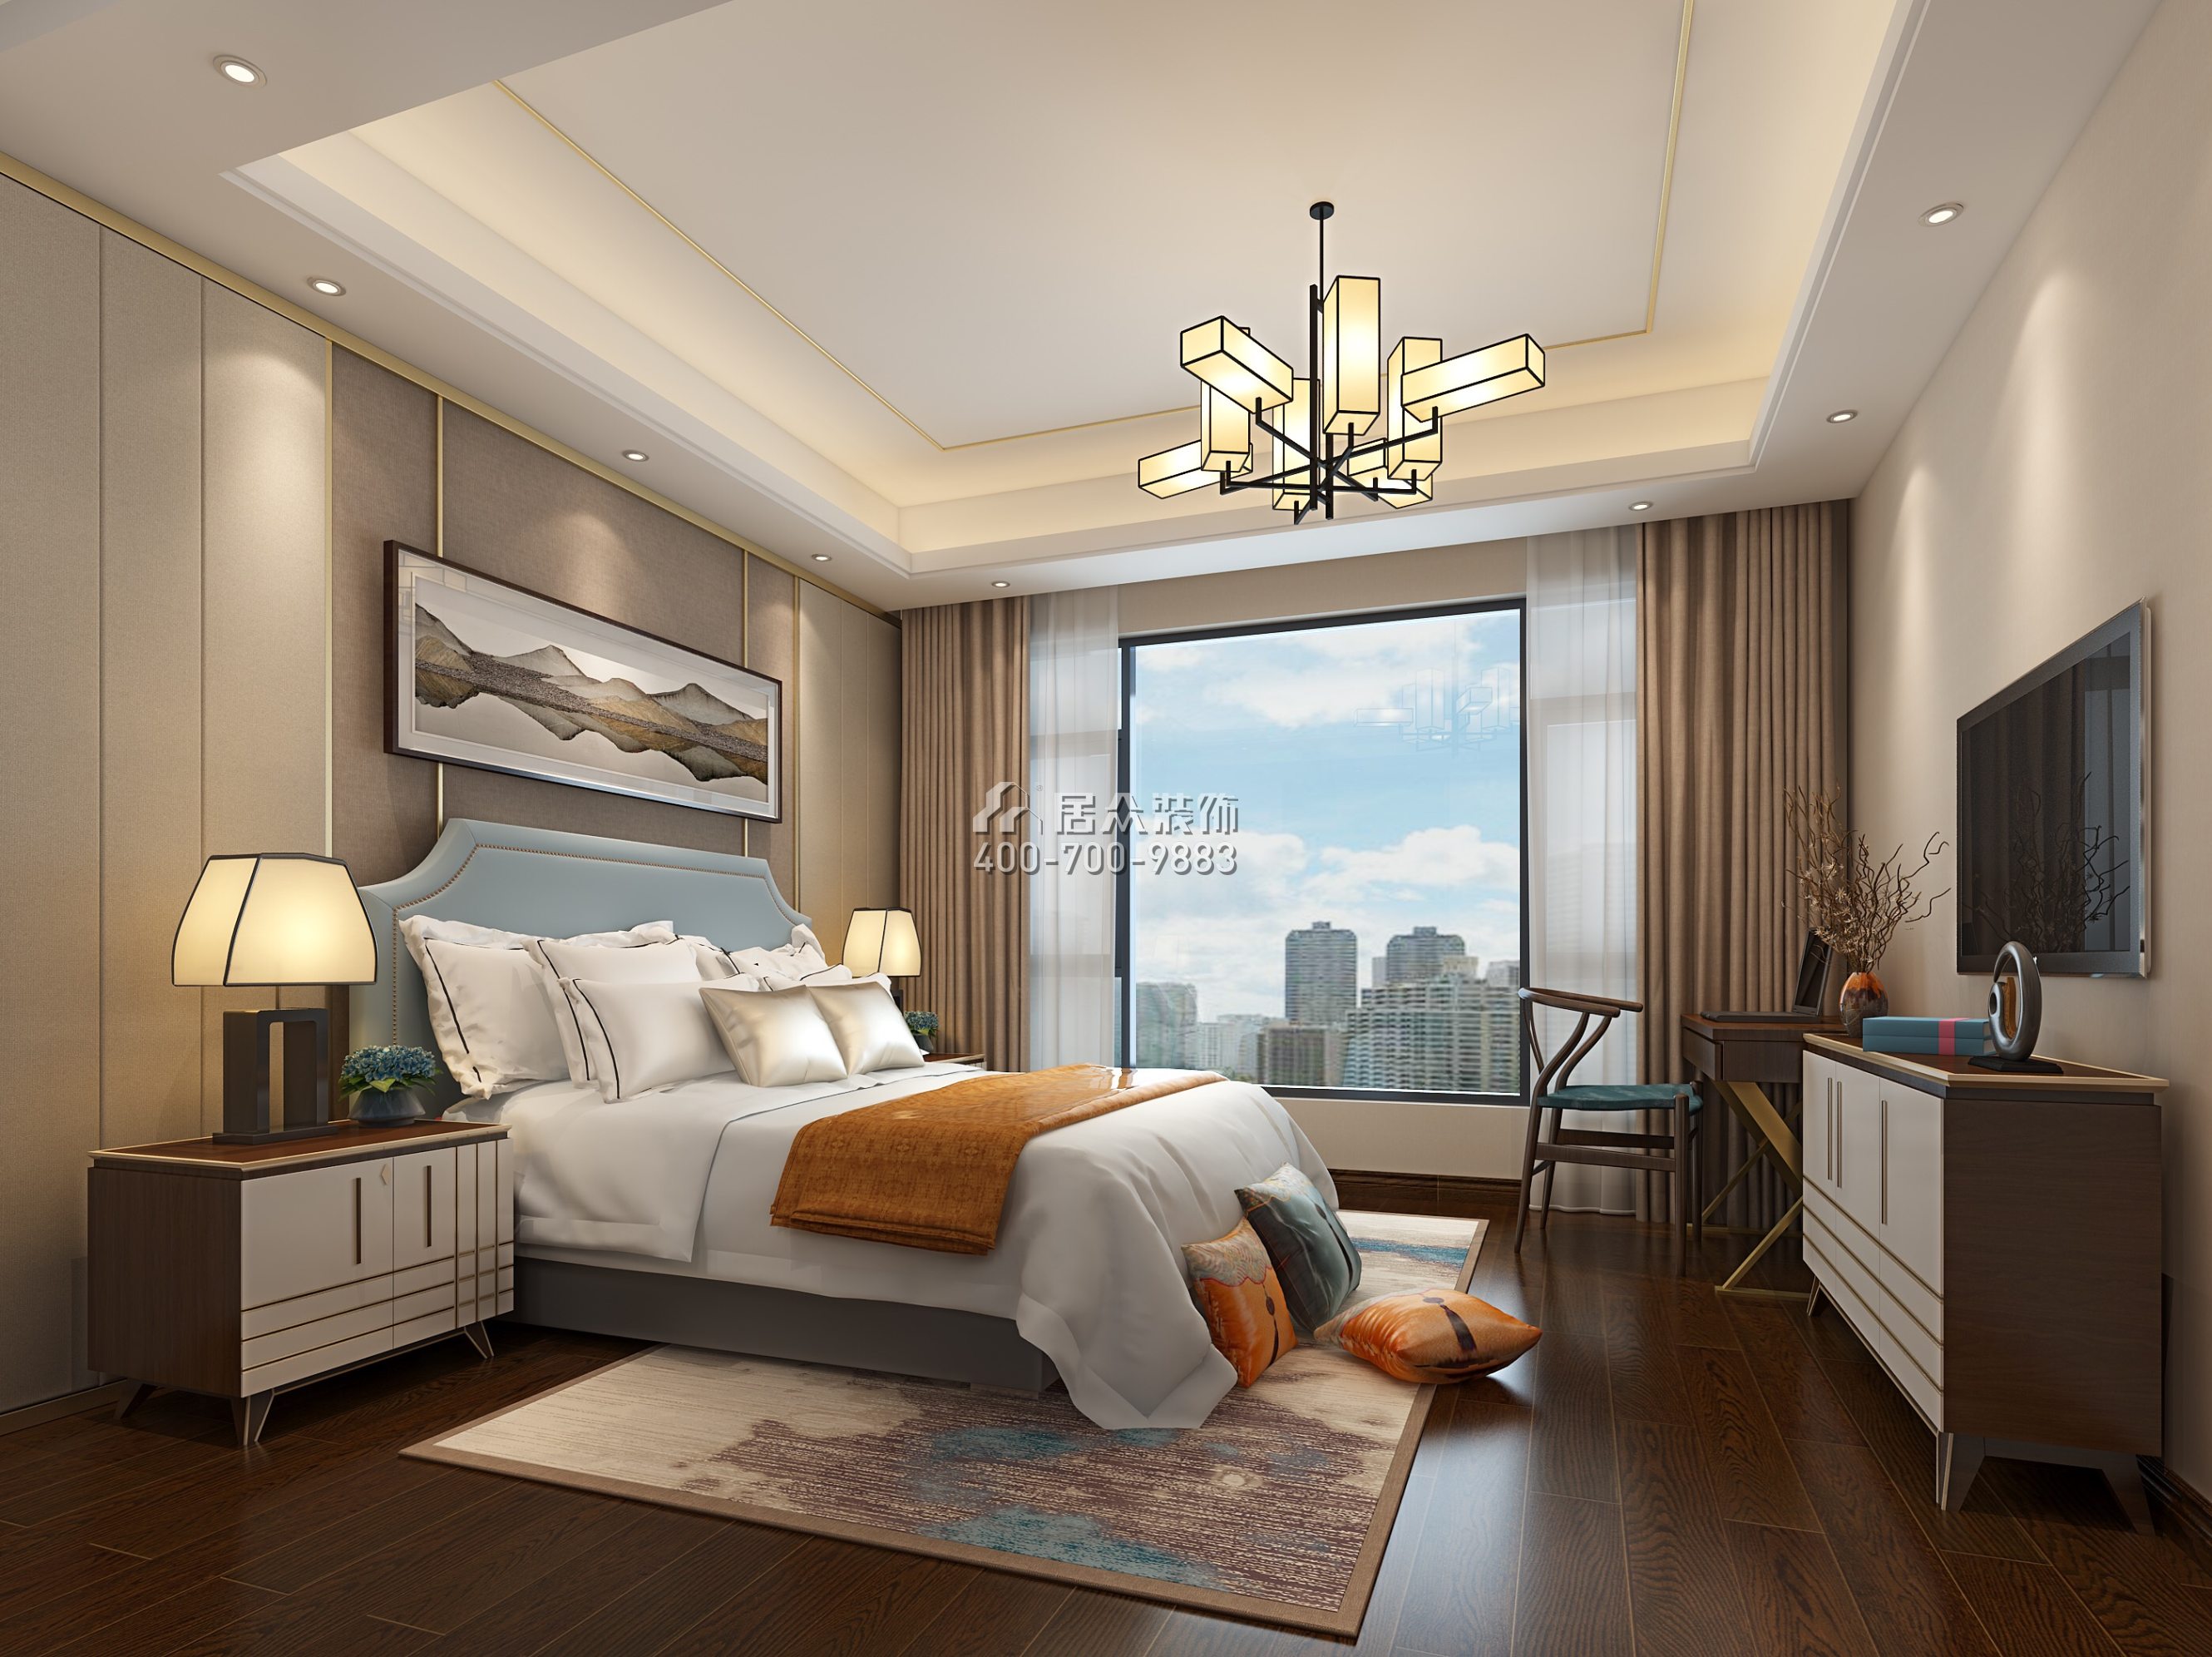 方直珑湖湾163平方米中式风格平层户型卧室装修效果图